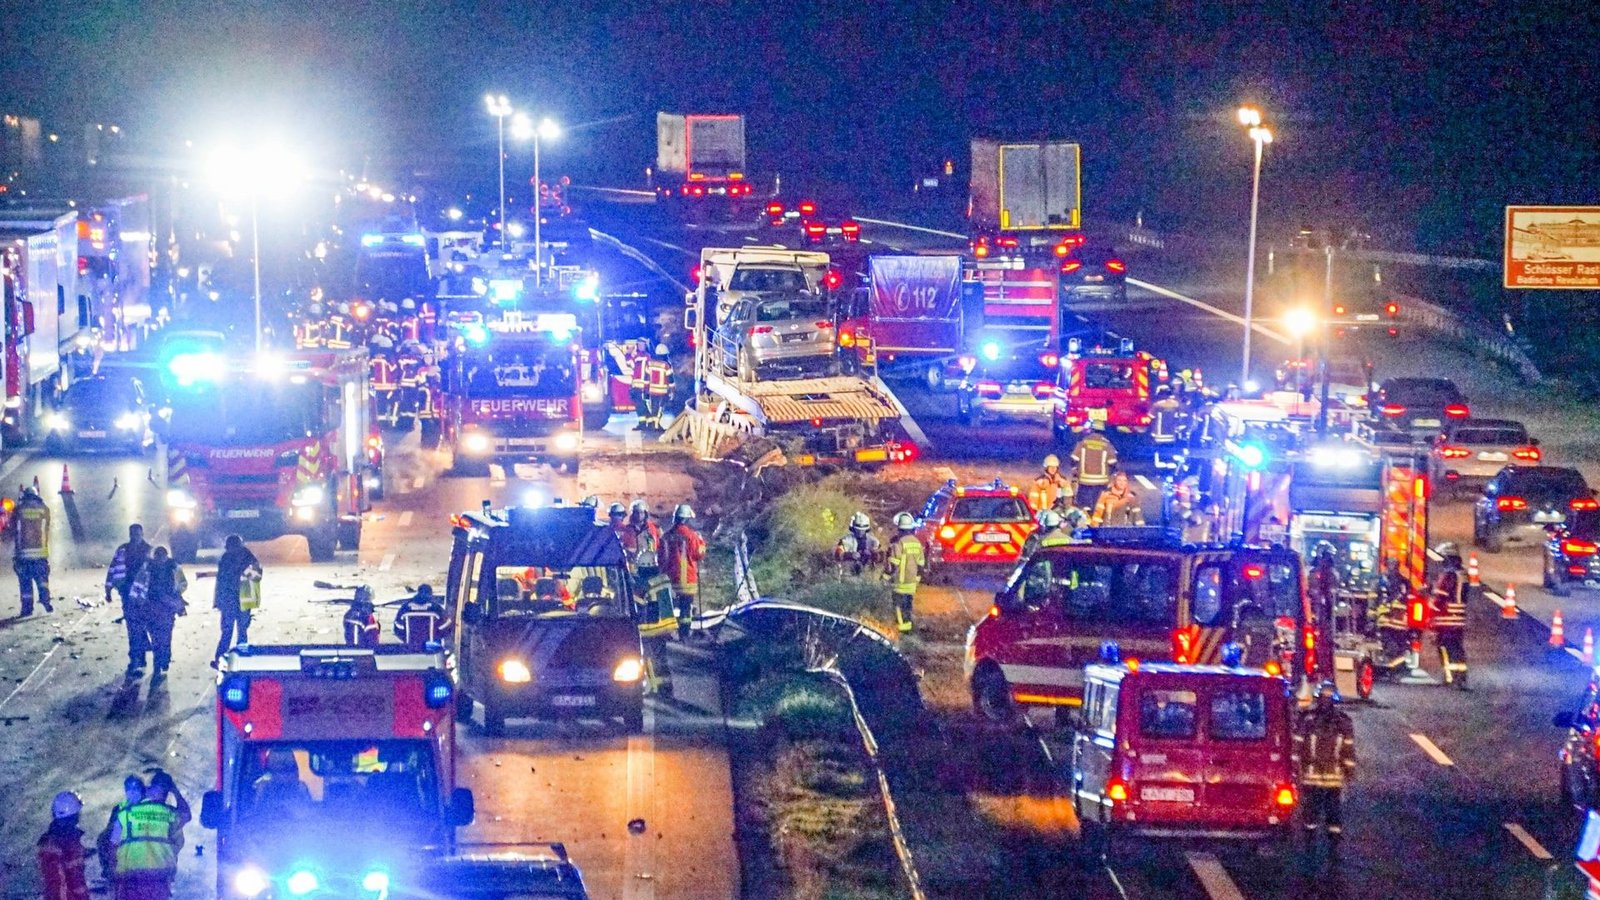 Feuerwehr- und Rettungsfahrzeuge stehen nach dem LKW-Unfall bei Raststatt auf der auf der Autobahn 5.Foto: -/Einsatz-Report24/dpa